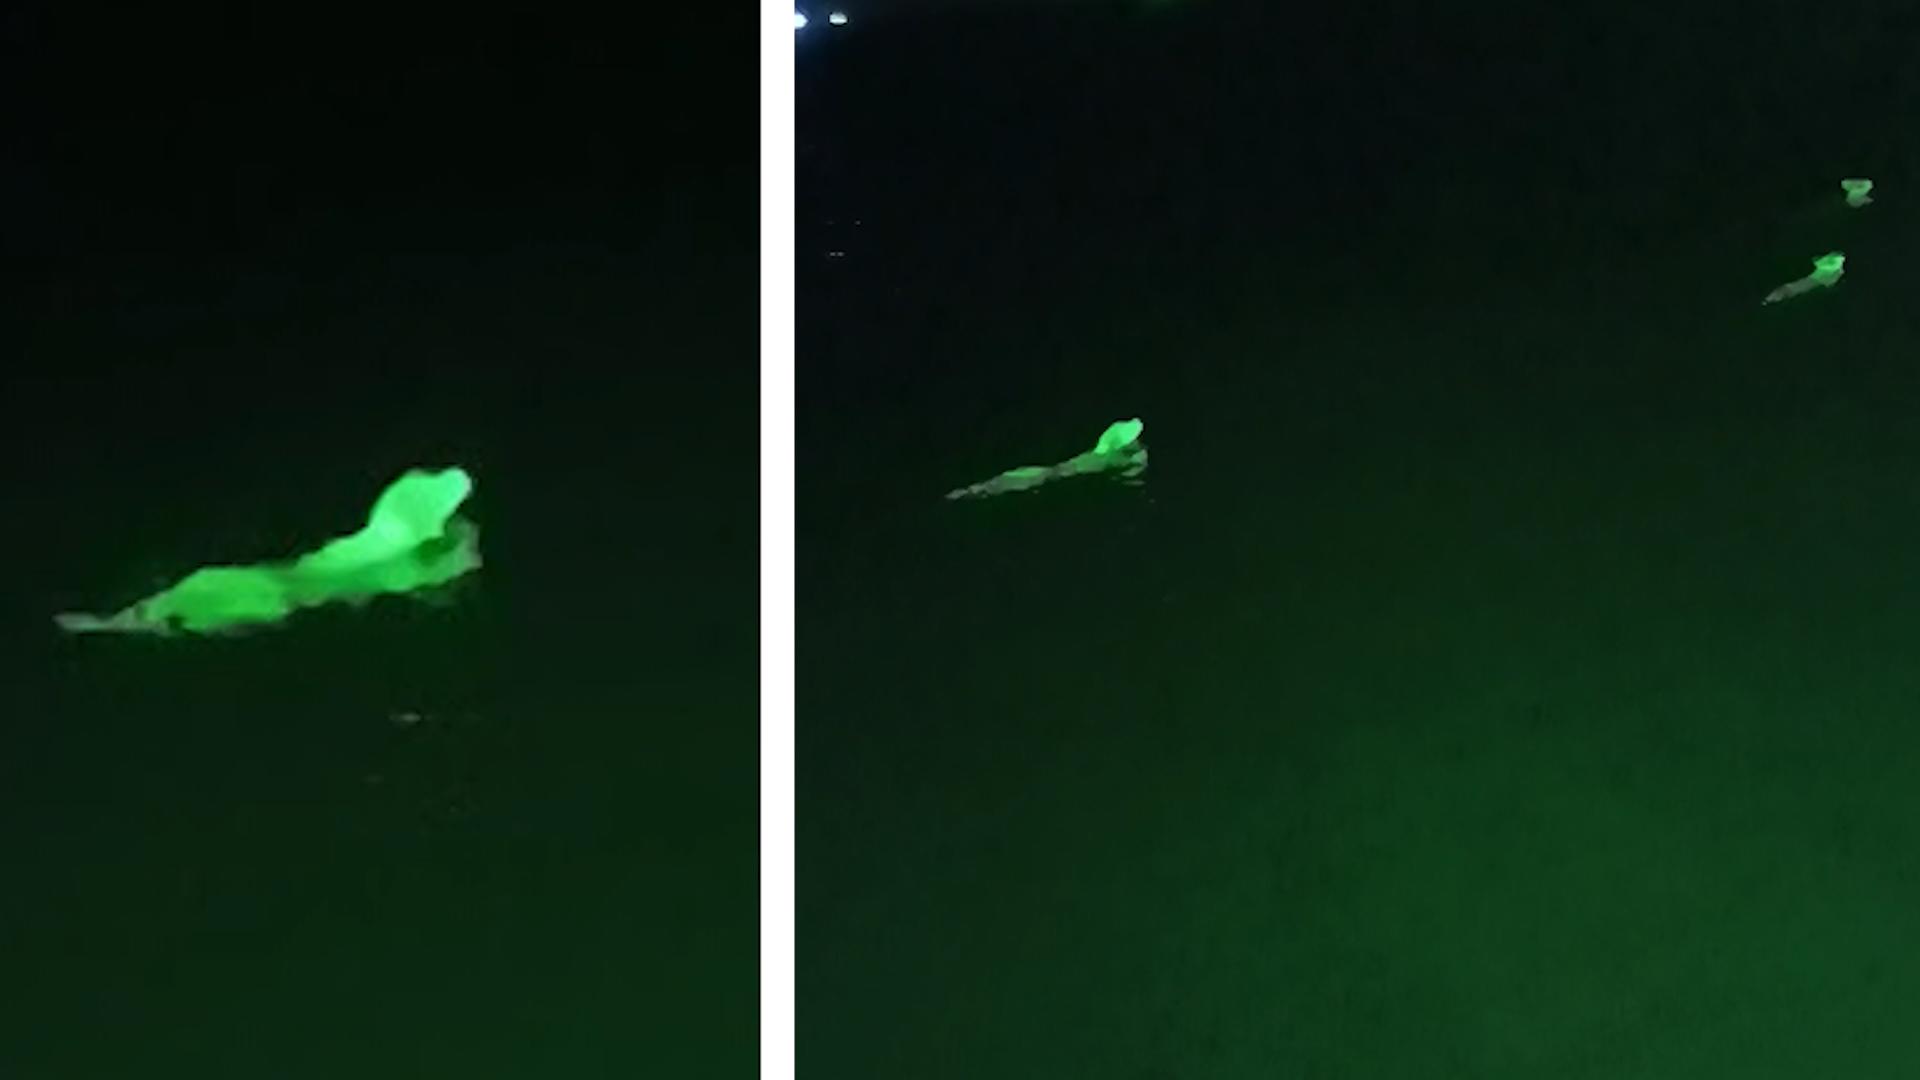 Rudel schwimmt im Meer und leuchtet neonfarben Ach du grüner Hund?!